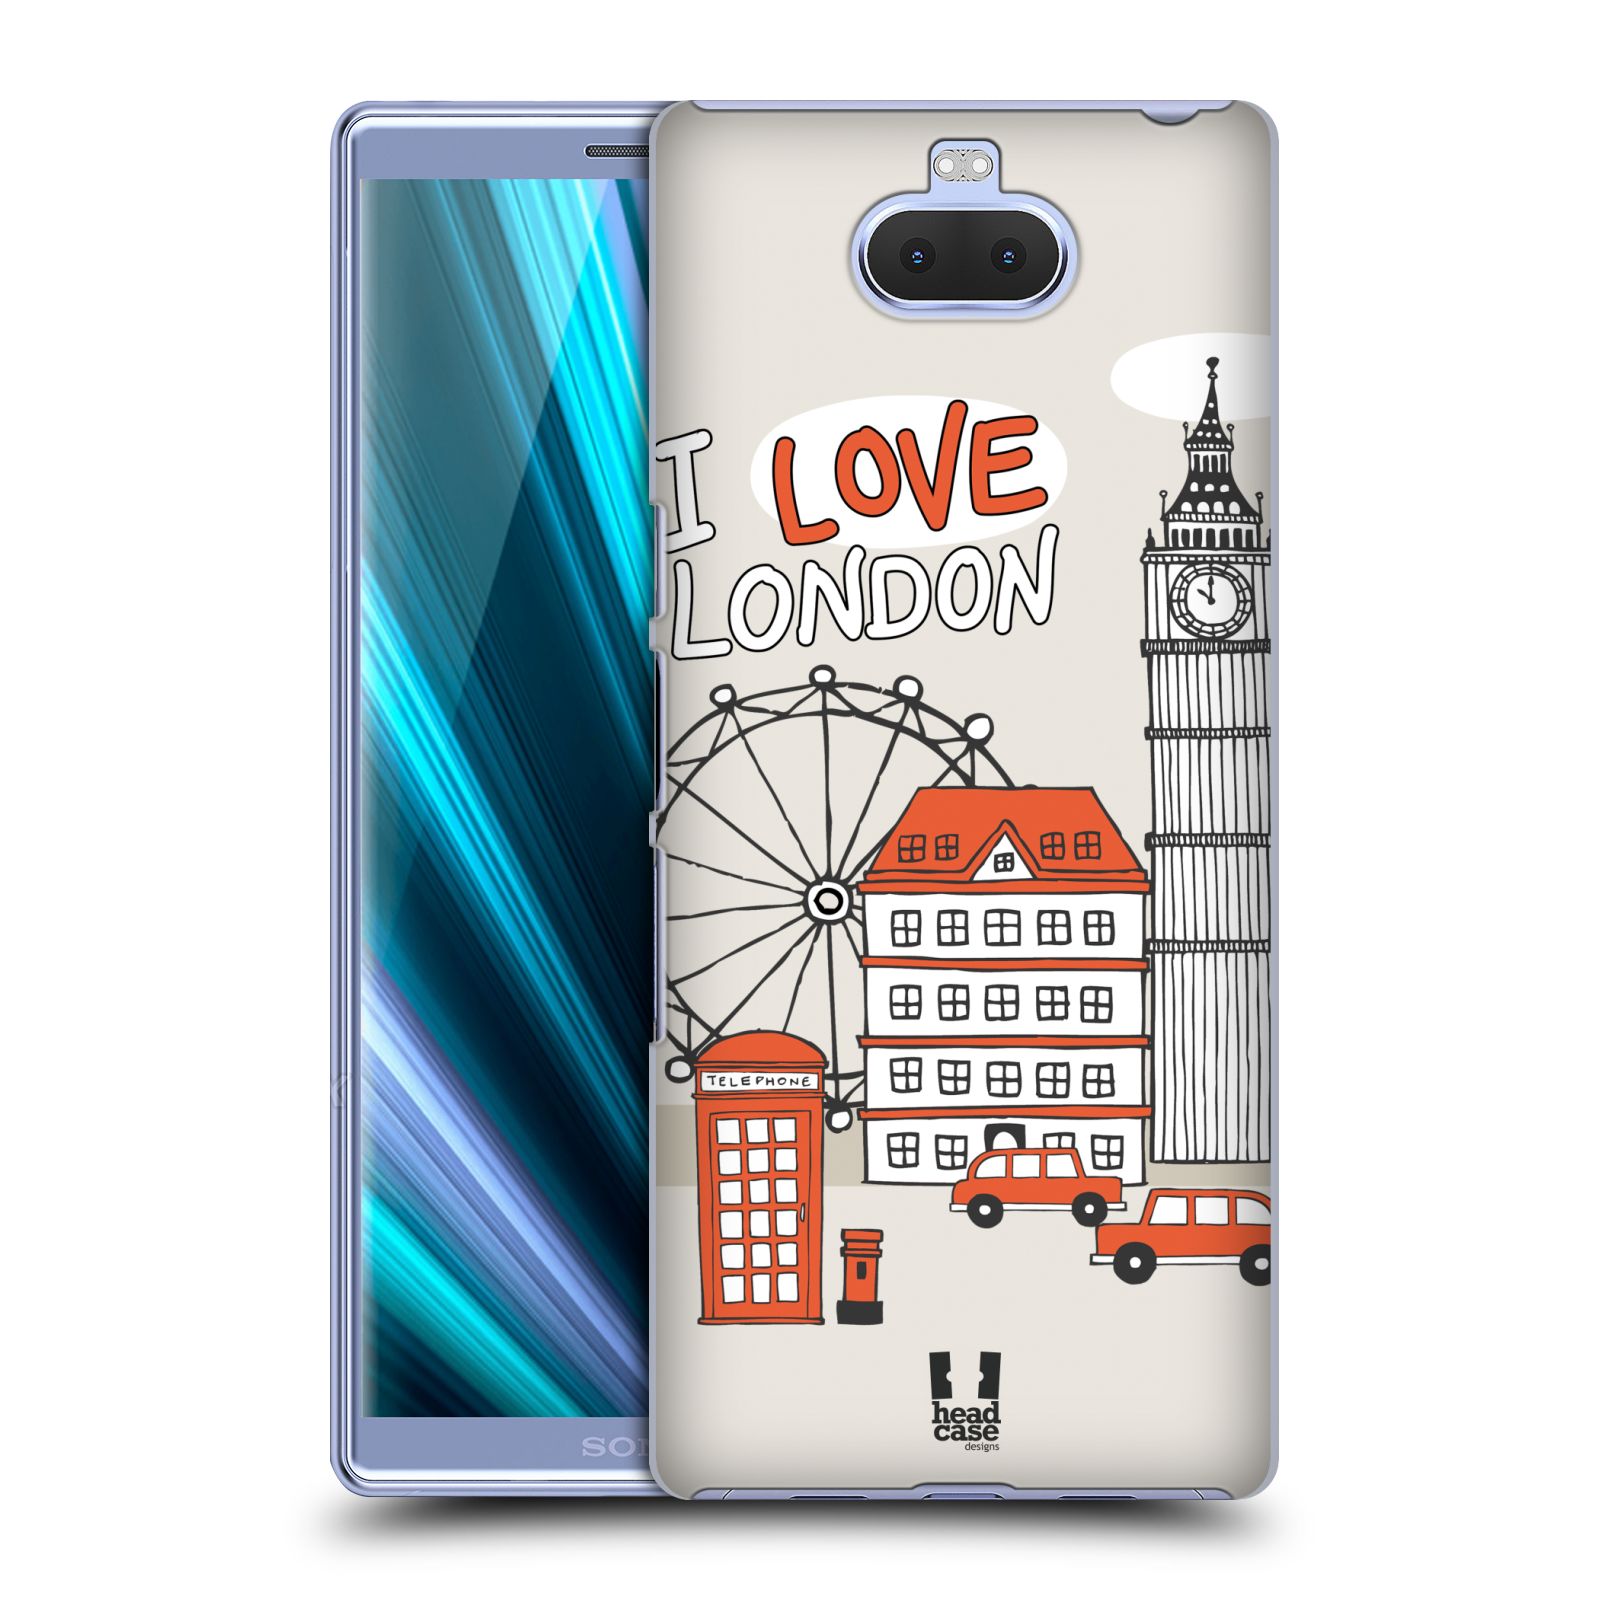 Pouzdro na mobil Sony Xperia 10 - Head Case - vzor Kreslená městečka ČERVENÁ, Anglie, Londýn, I LOVE LONDON